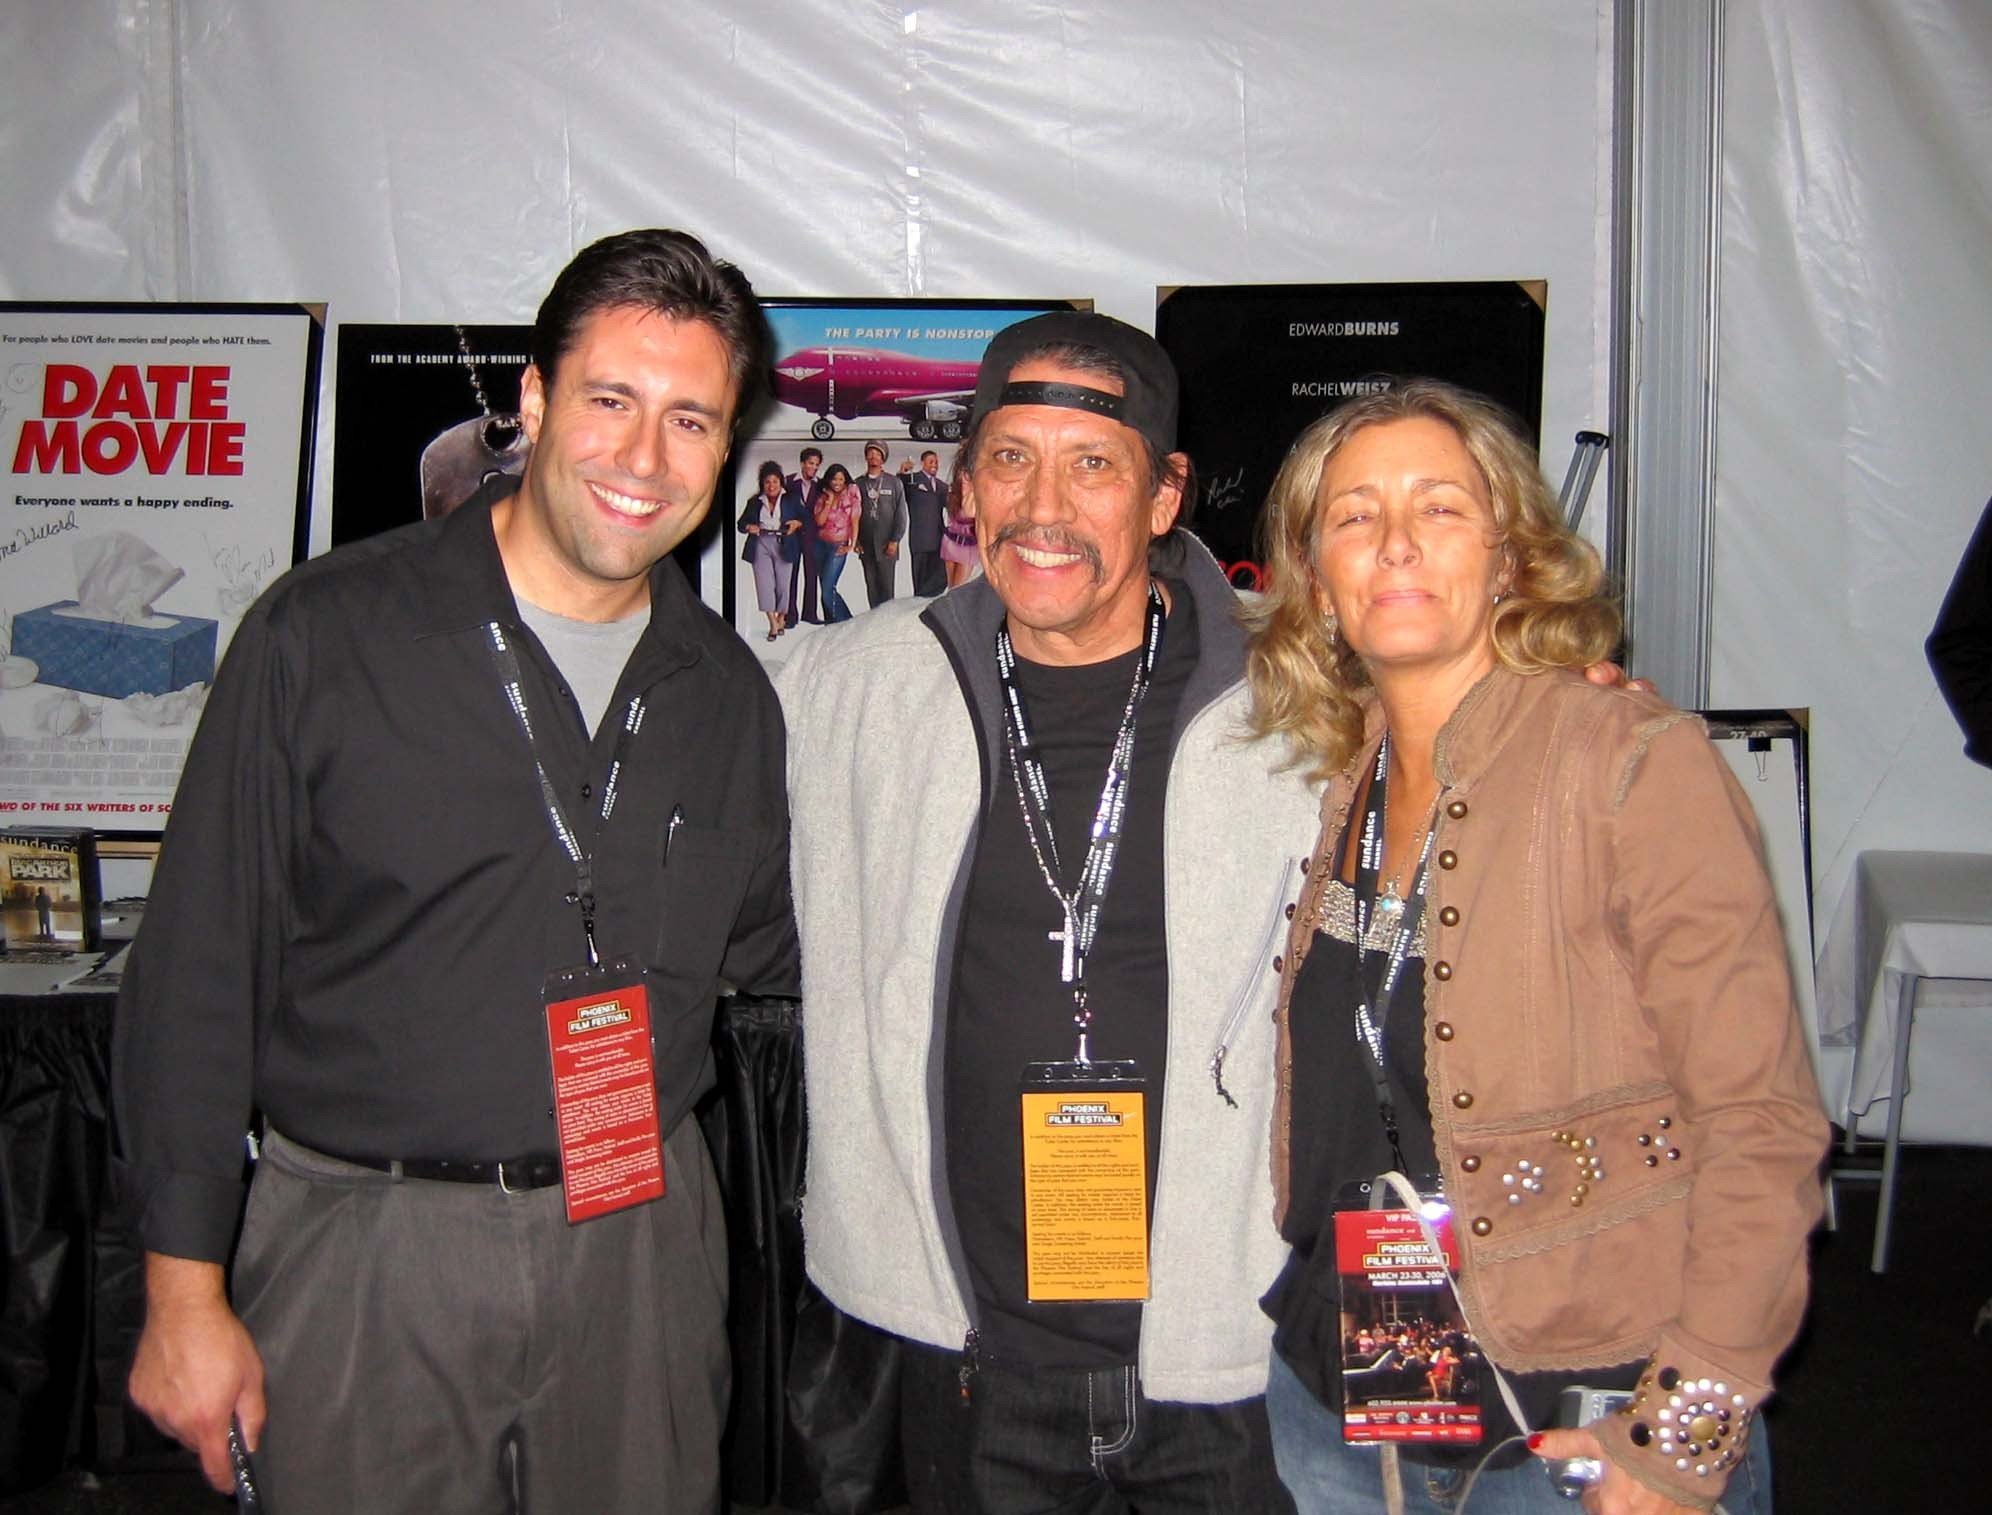 Jenny Pond, Danny Trejo & Paul deNigris at the 2006 Phoenix Film Festival.